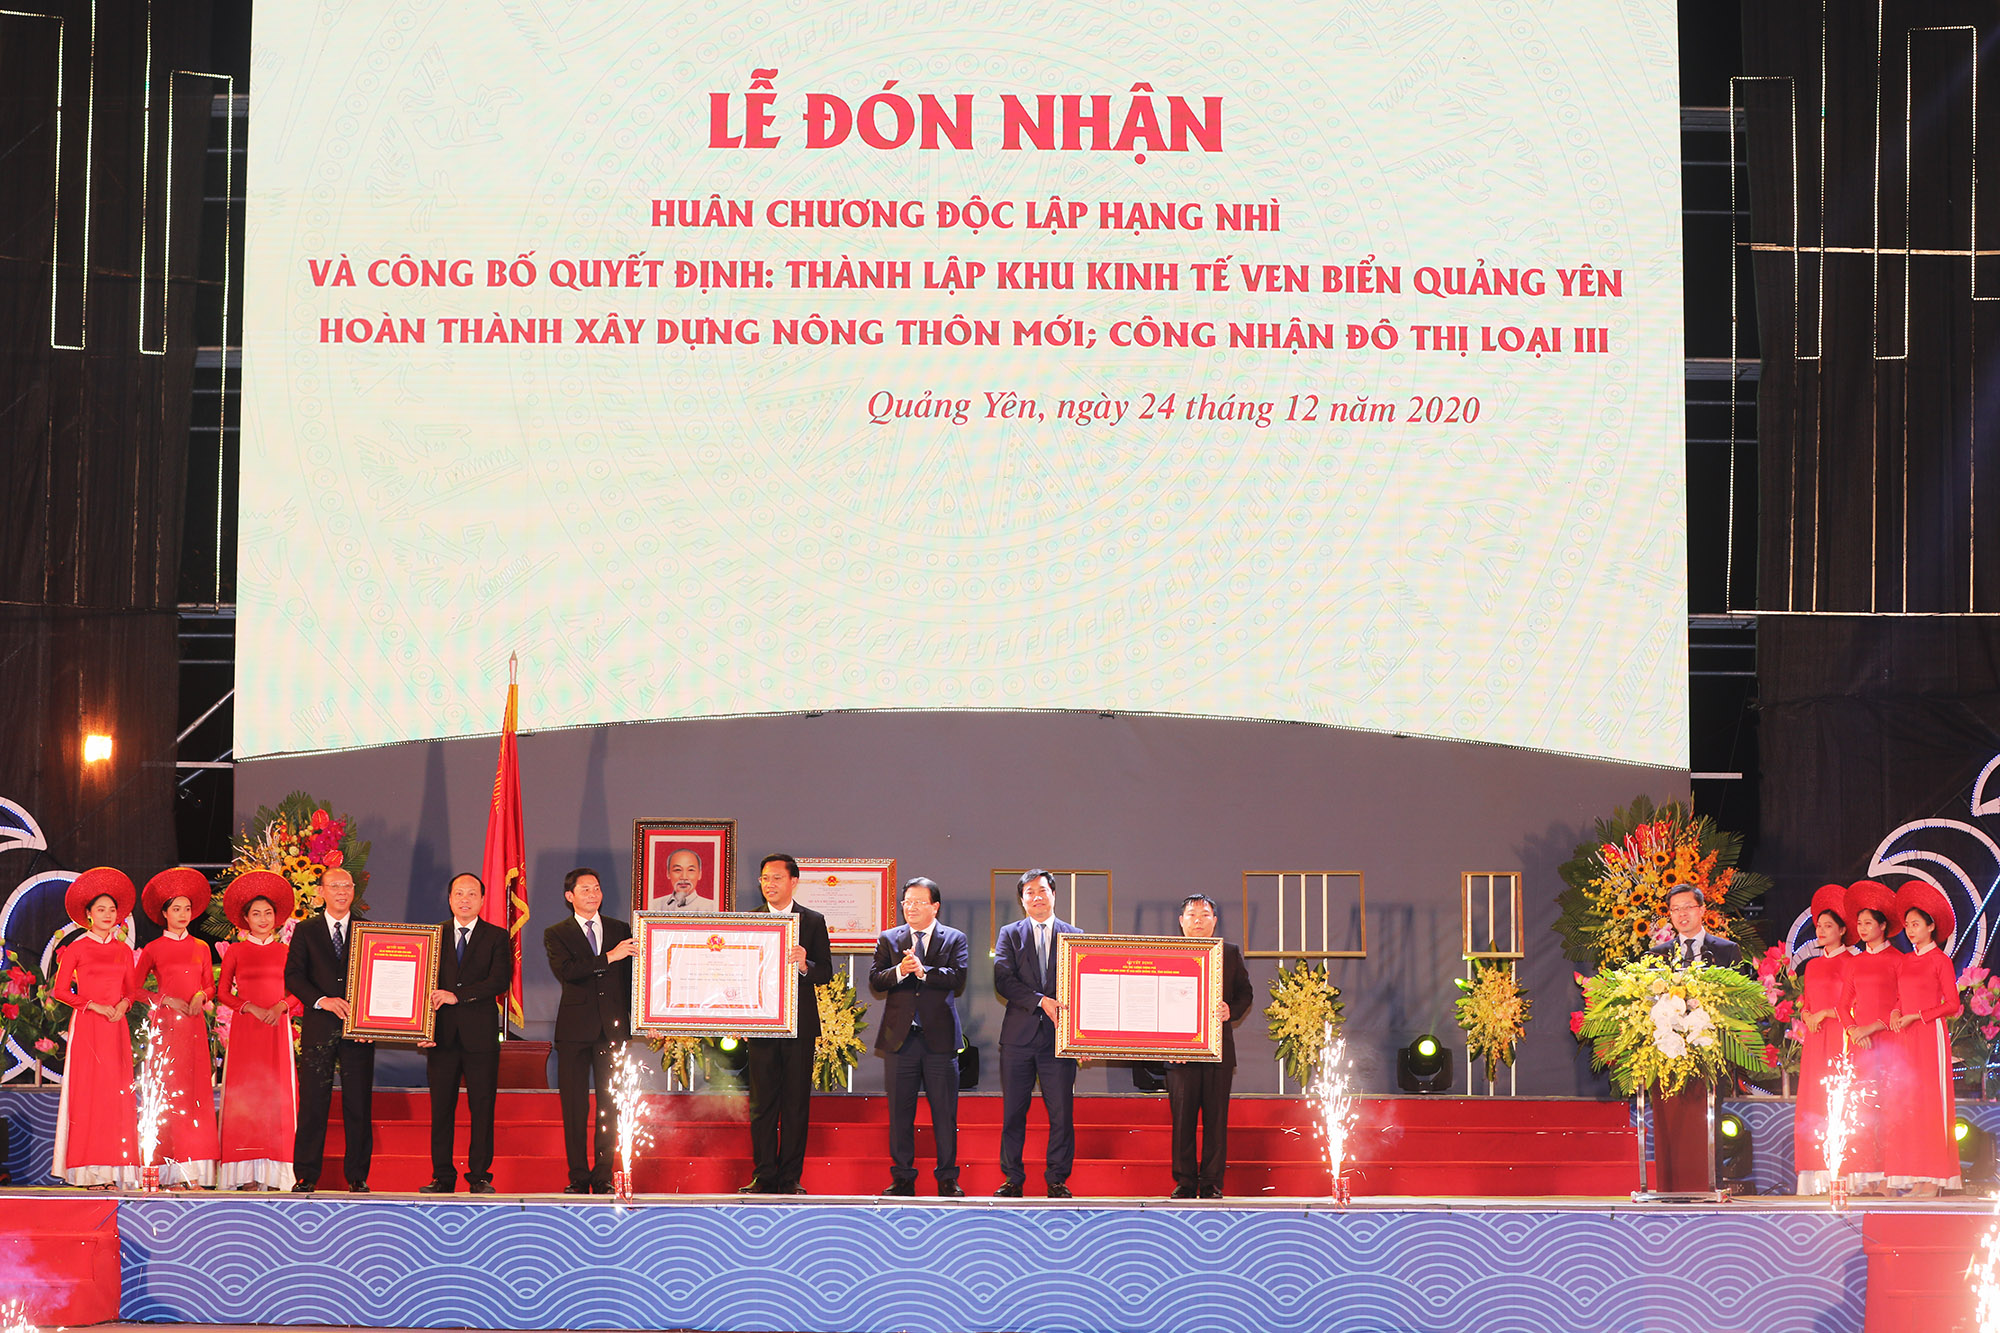 Đồng chí Trịnh Đình Dũng, Phó Thủ tướng Chính phủ, trao Quyết định thành lập KKT ven biển Quảng Yên